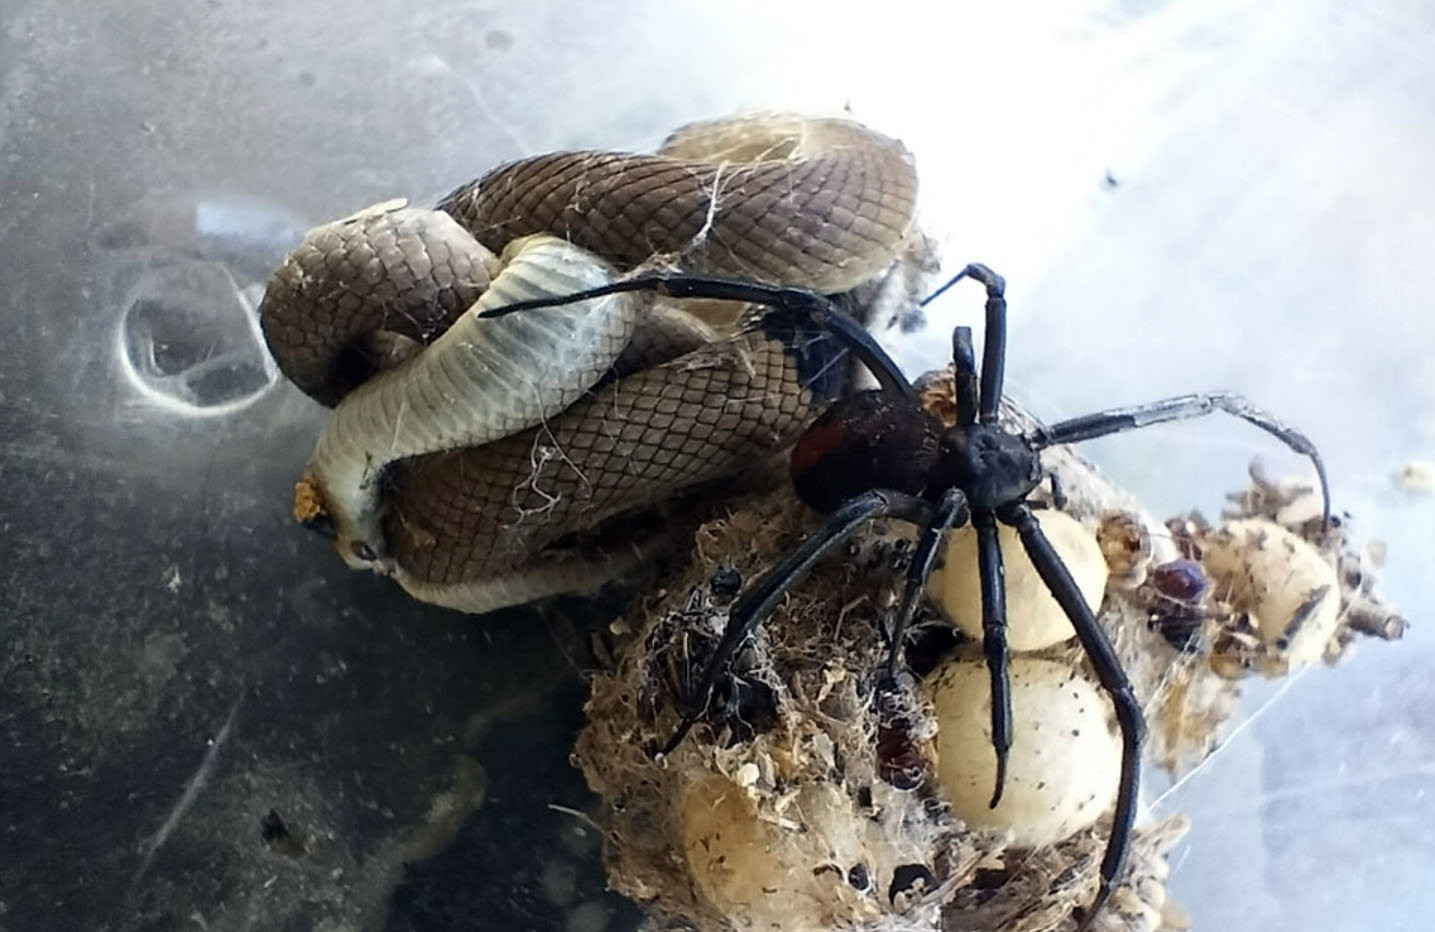 giant spider eating snake